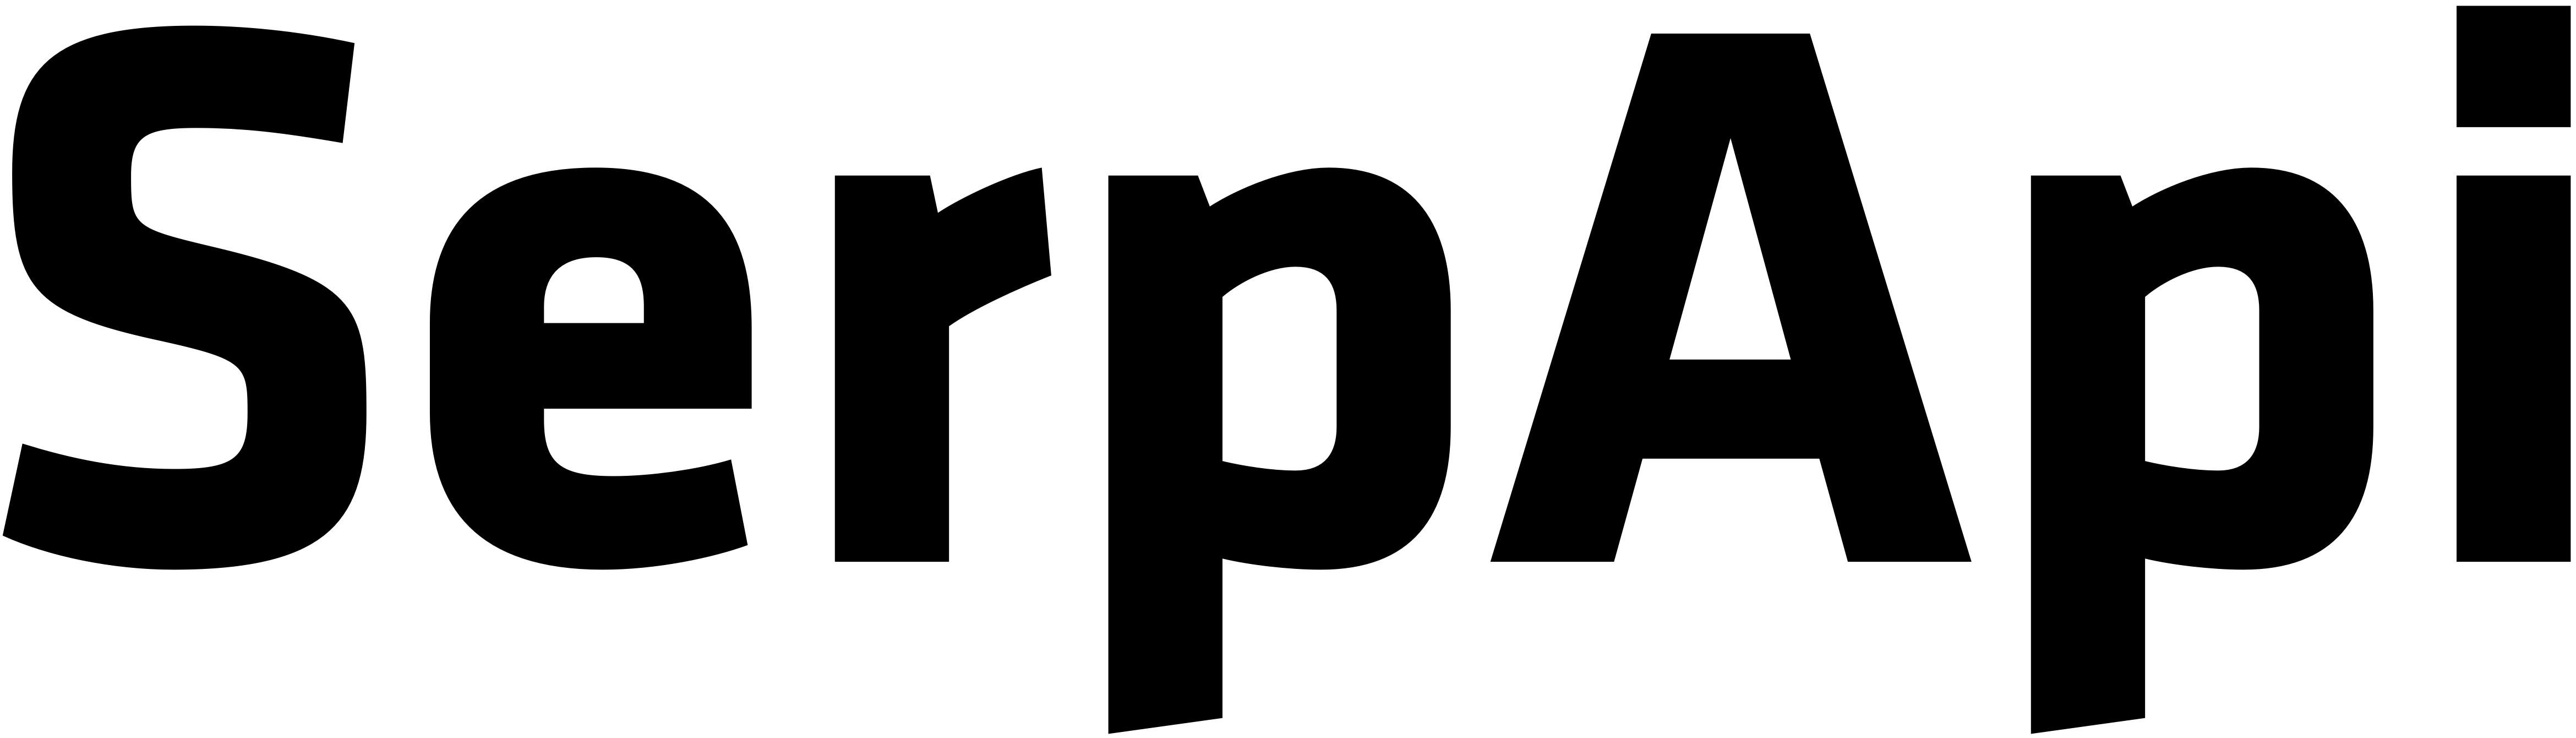 serpapi.com